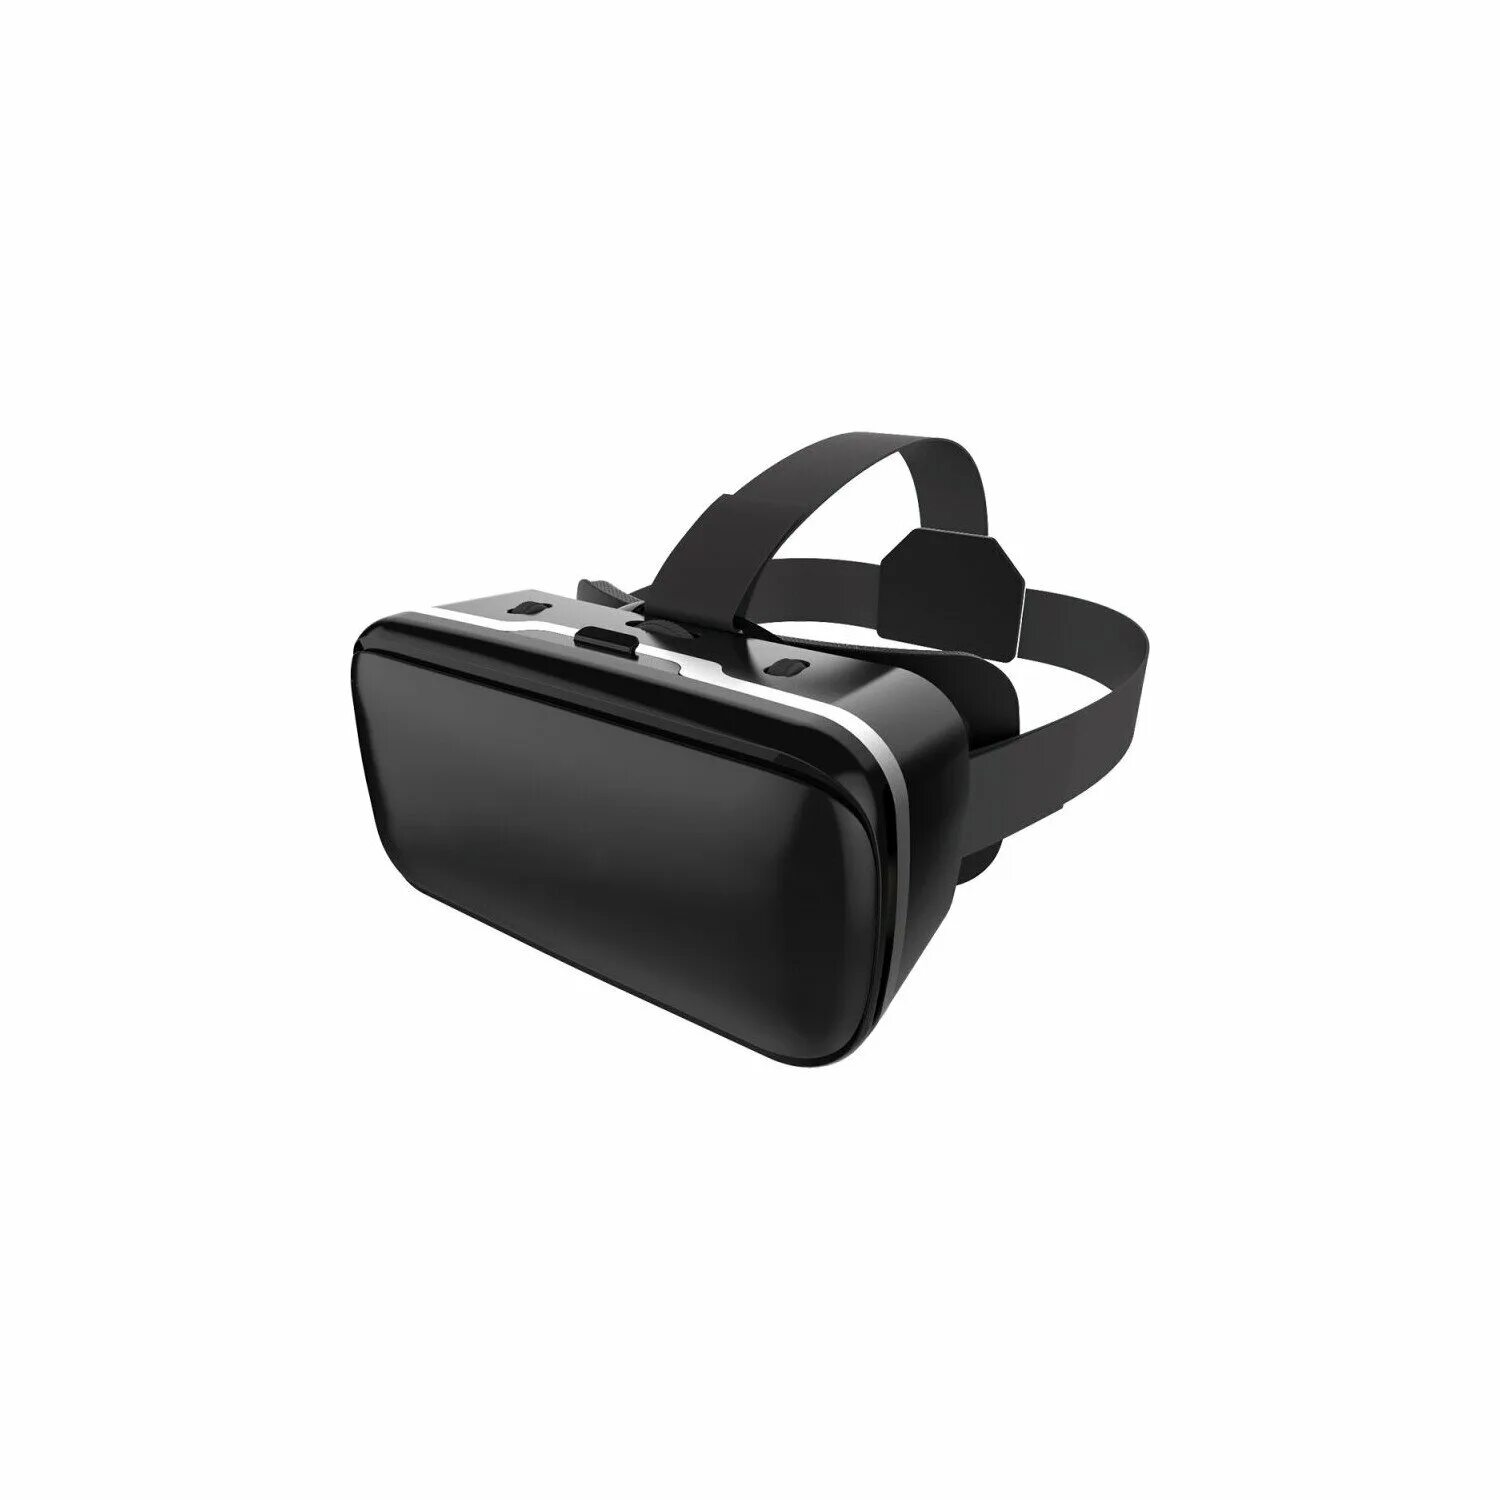 Лучшие виртуальные очки купить. Smarterra vr2 Mark 2. Smarterra vr2. 3d-очки виртуальной реальности Smarterra VR. Очки виртуальной реальности для смартфона Smarterra vr2 Mark 2.